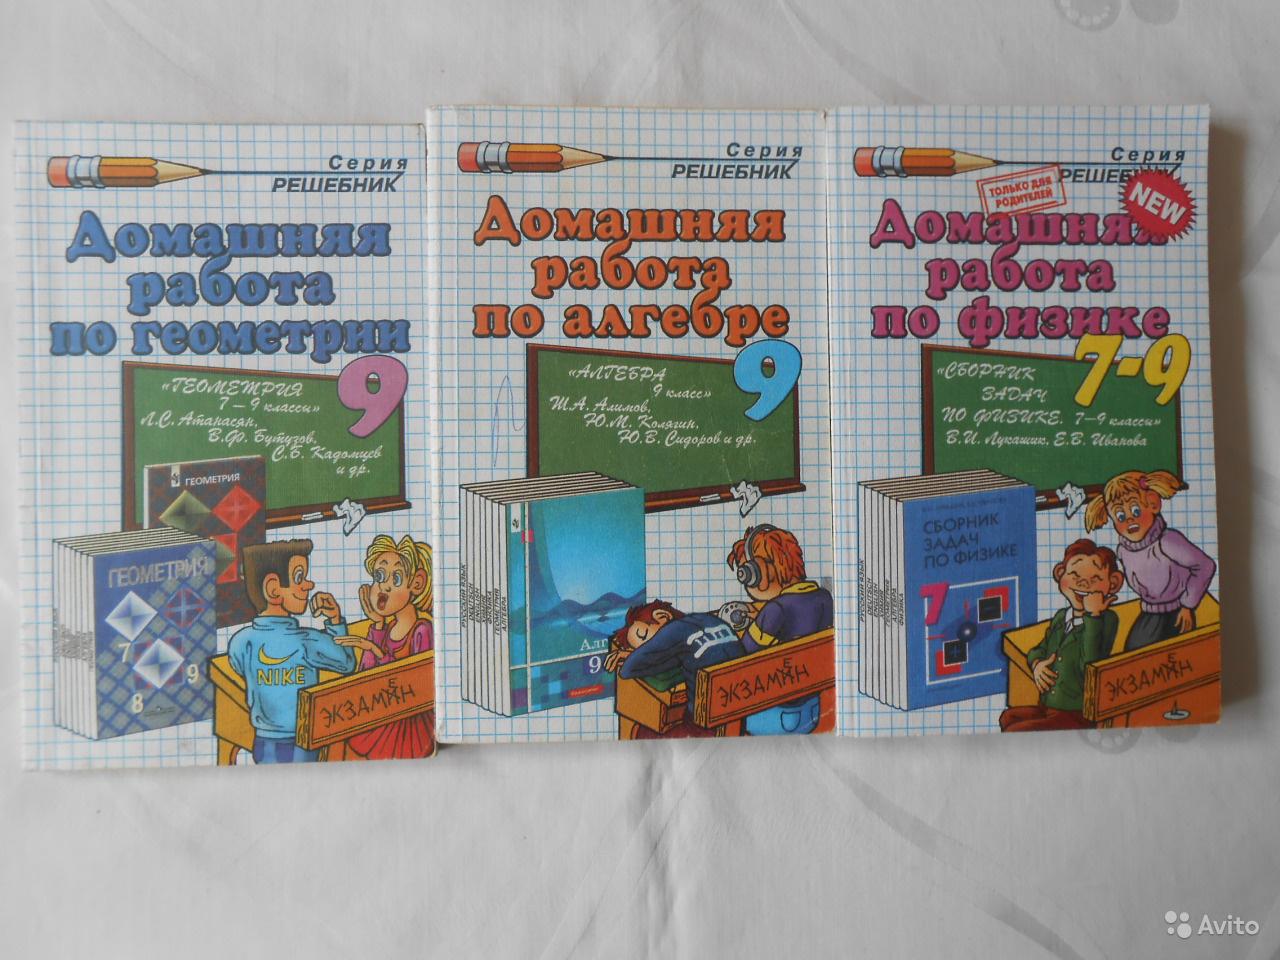 Домашняя работа по алгебре. 9 класс (к учебнику Алимова) А. В. Морозов